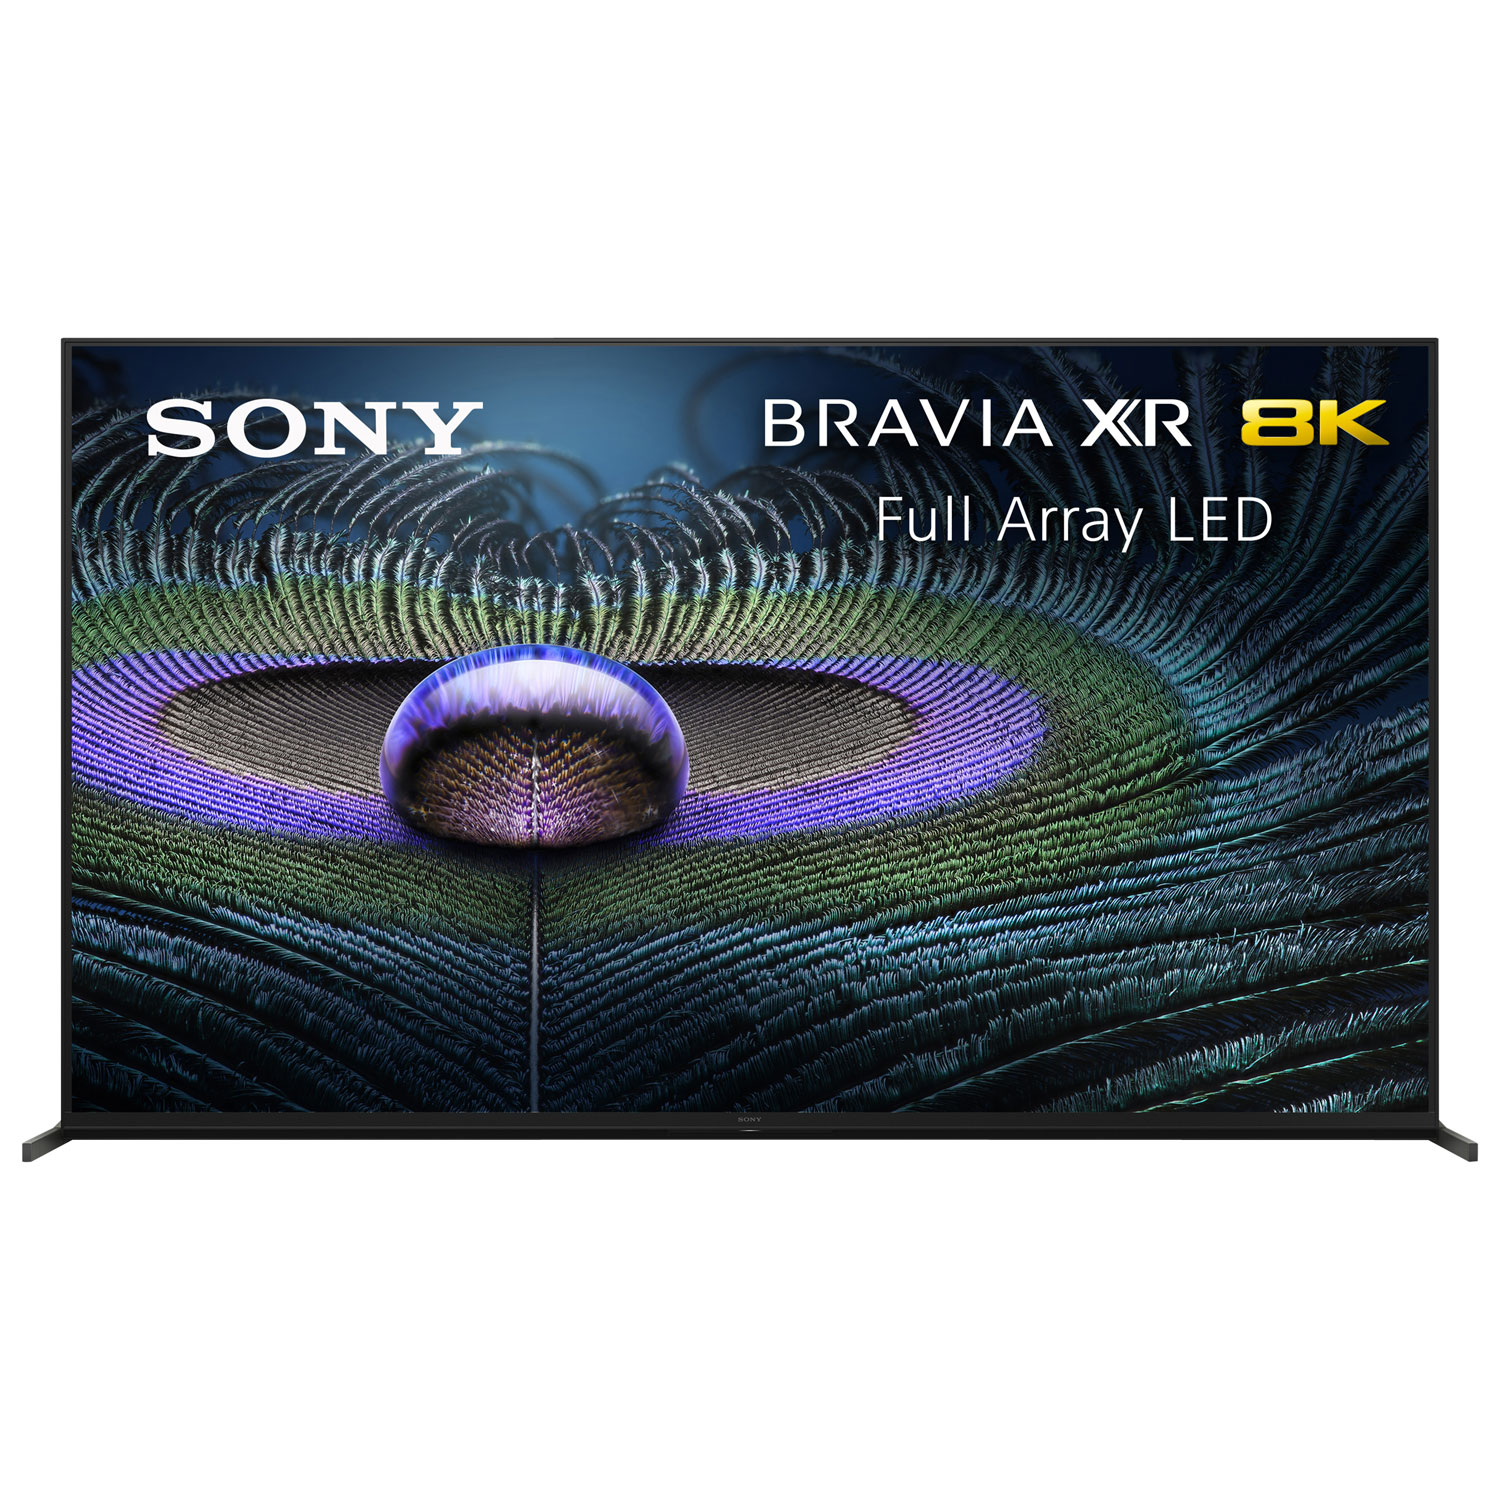 Sony BRAVIA XR Z9J 85" 8K UHD HDR LED Smart Google TV (XR85Z9J) - 2021